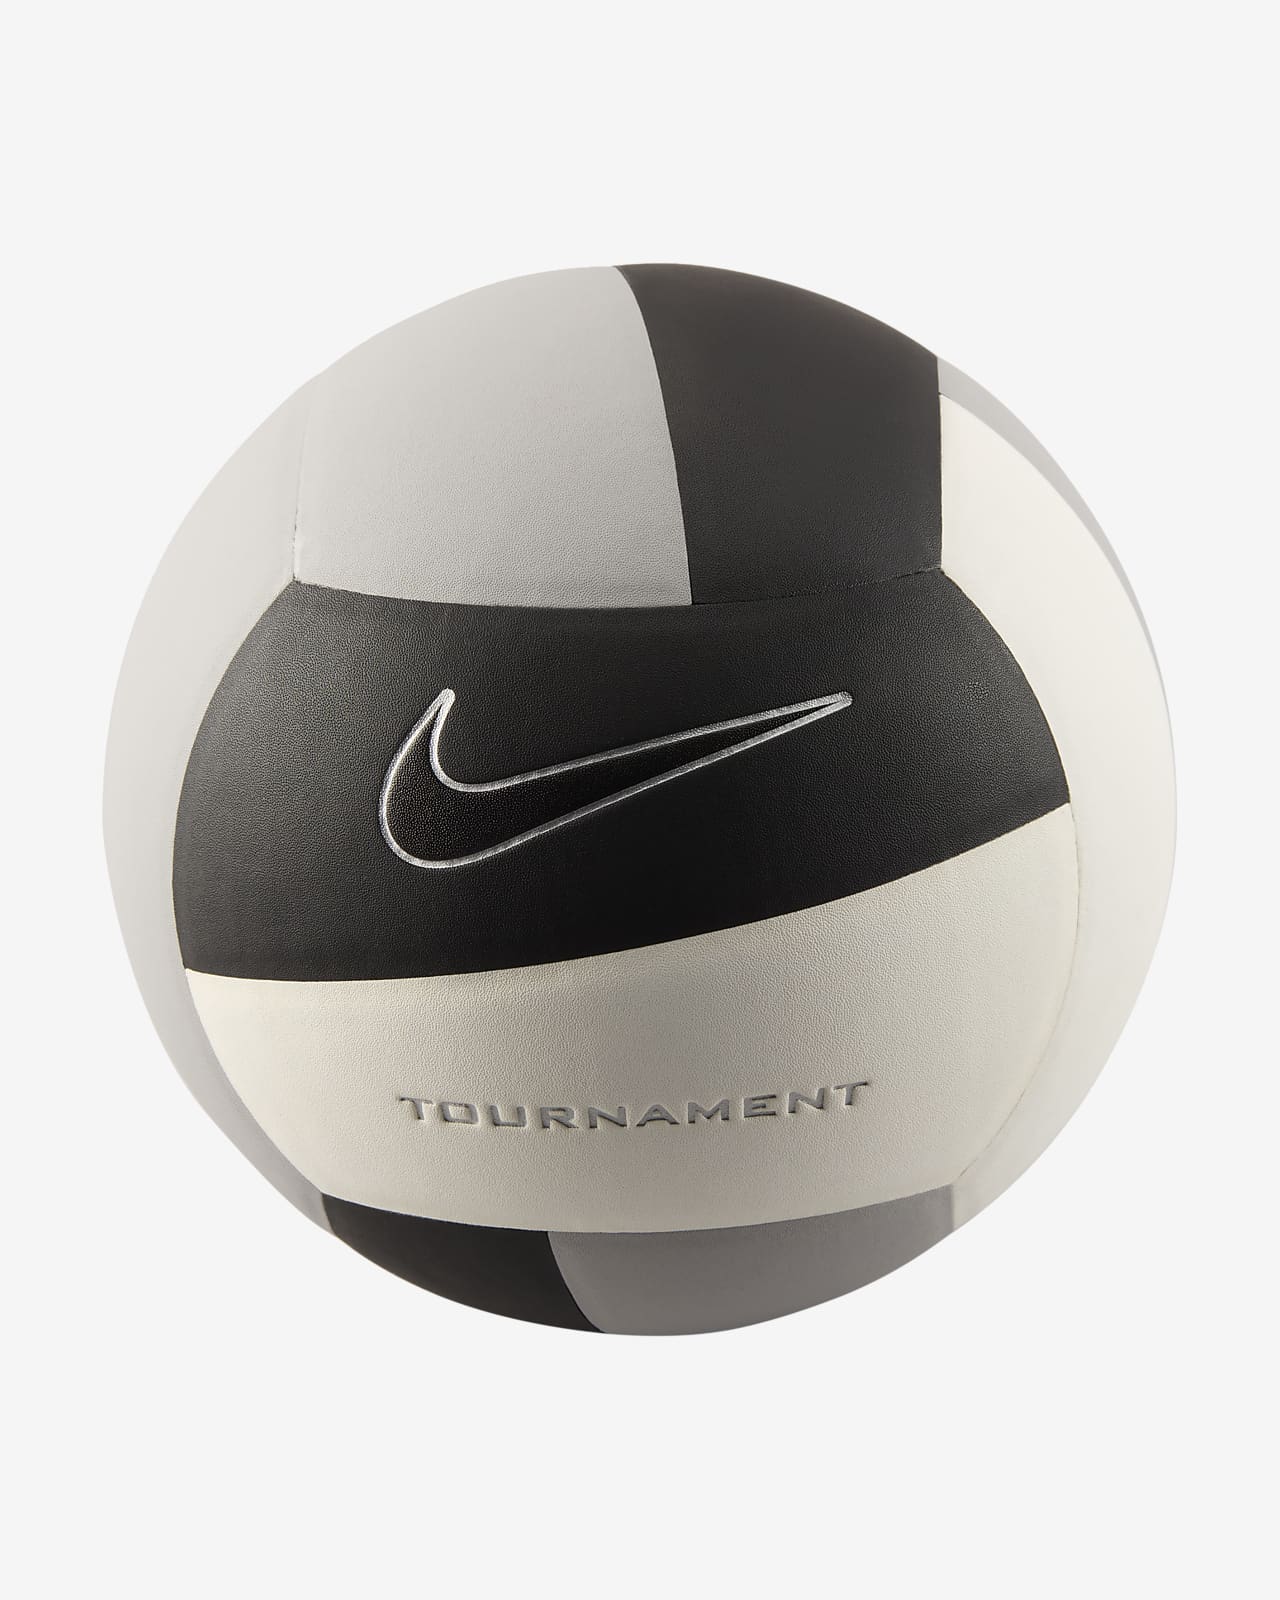 Vóleibol Nike Tournament 12P